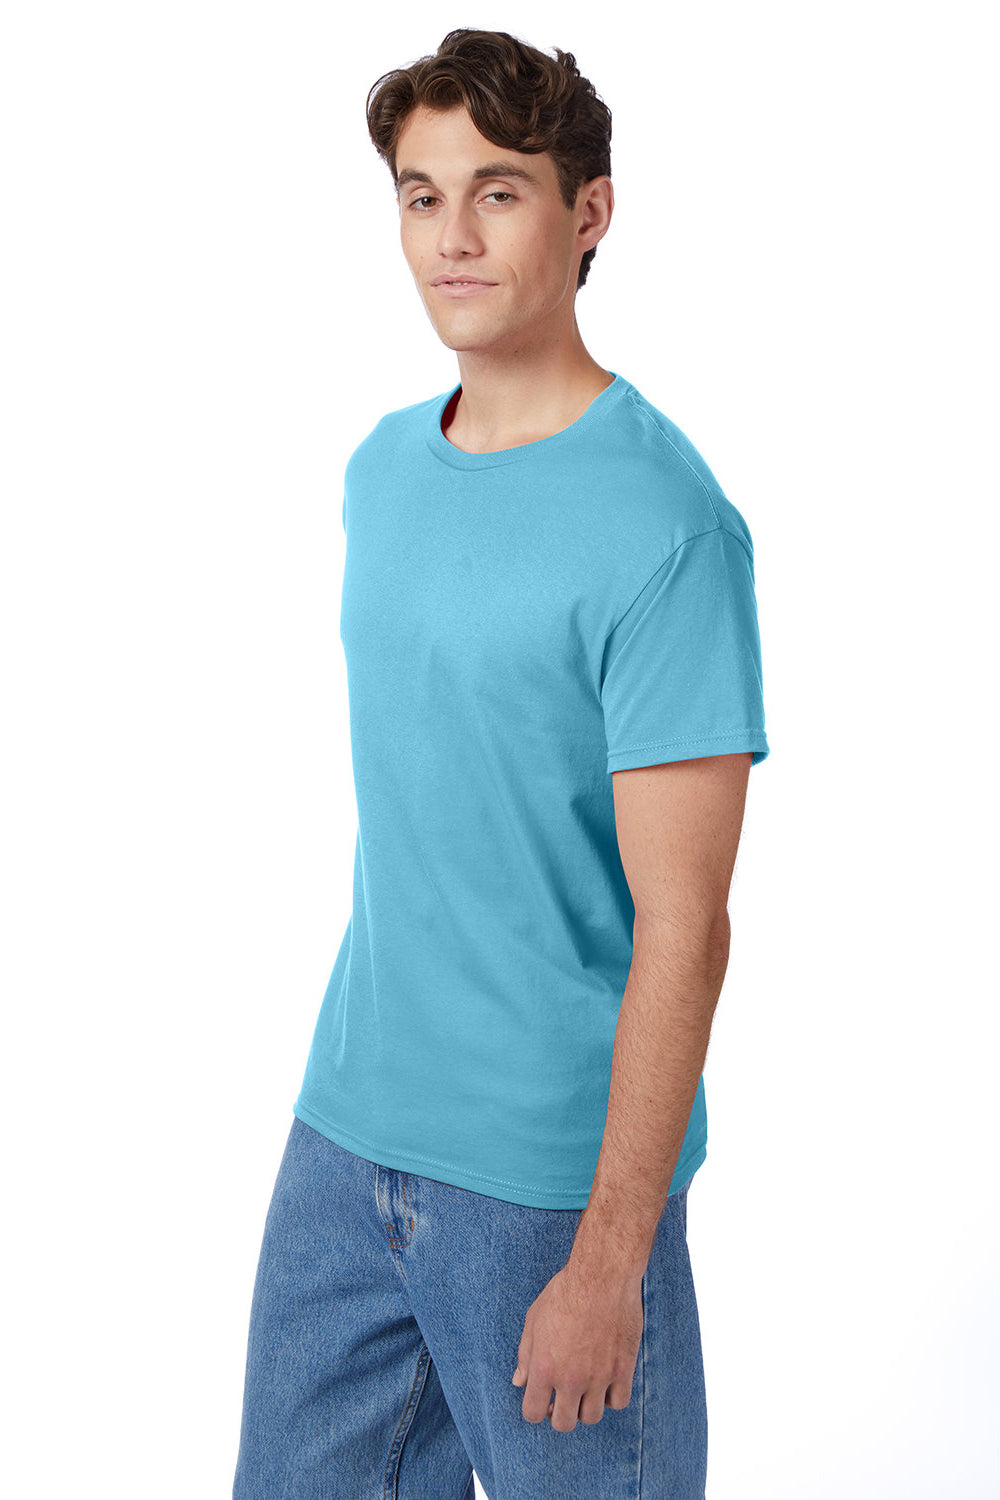 Hanes 5250/5250T Mens ComfortSoft Short Sleeve Crewneck T-Shirt Blue Horizon 3Q